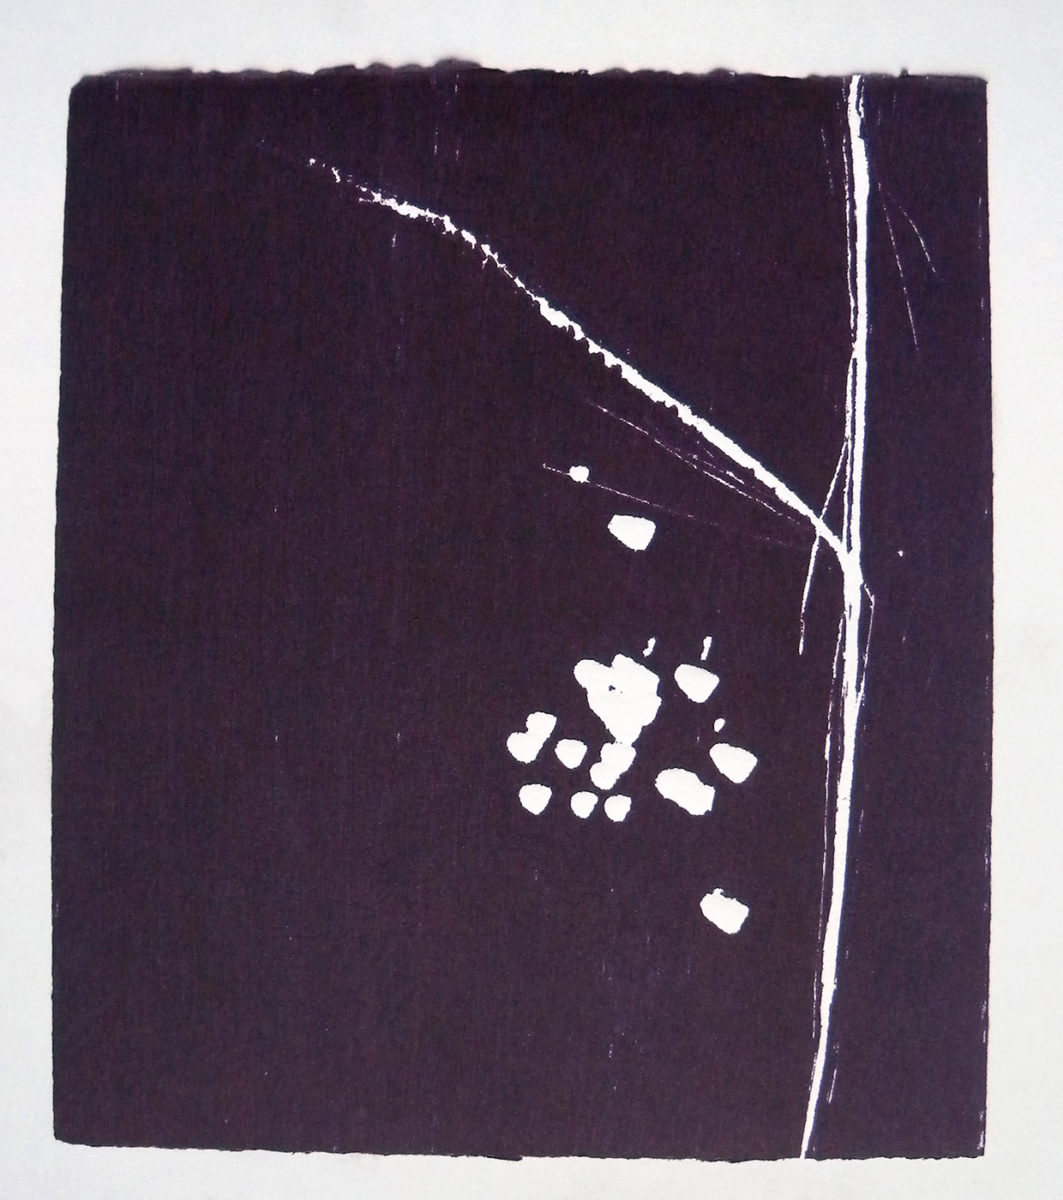 MARC FELD 2012 SONG FOR STEVE LACY 2 Gravure sur bois encre sur papier 25 x 26 cm (Tirage Patrick Vernet)